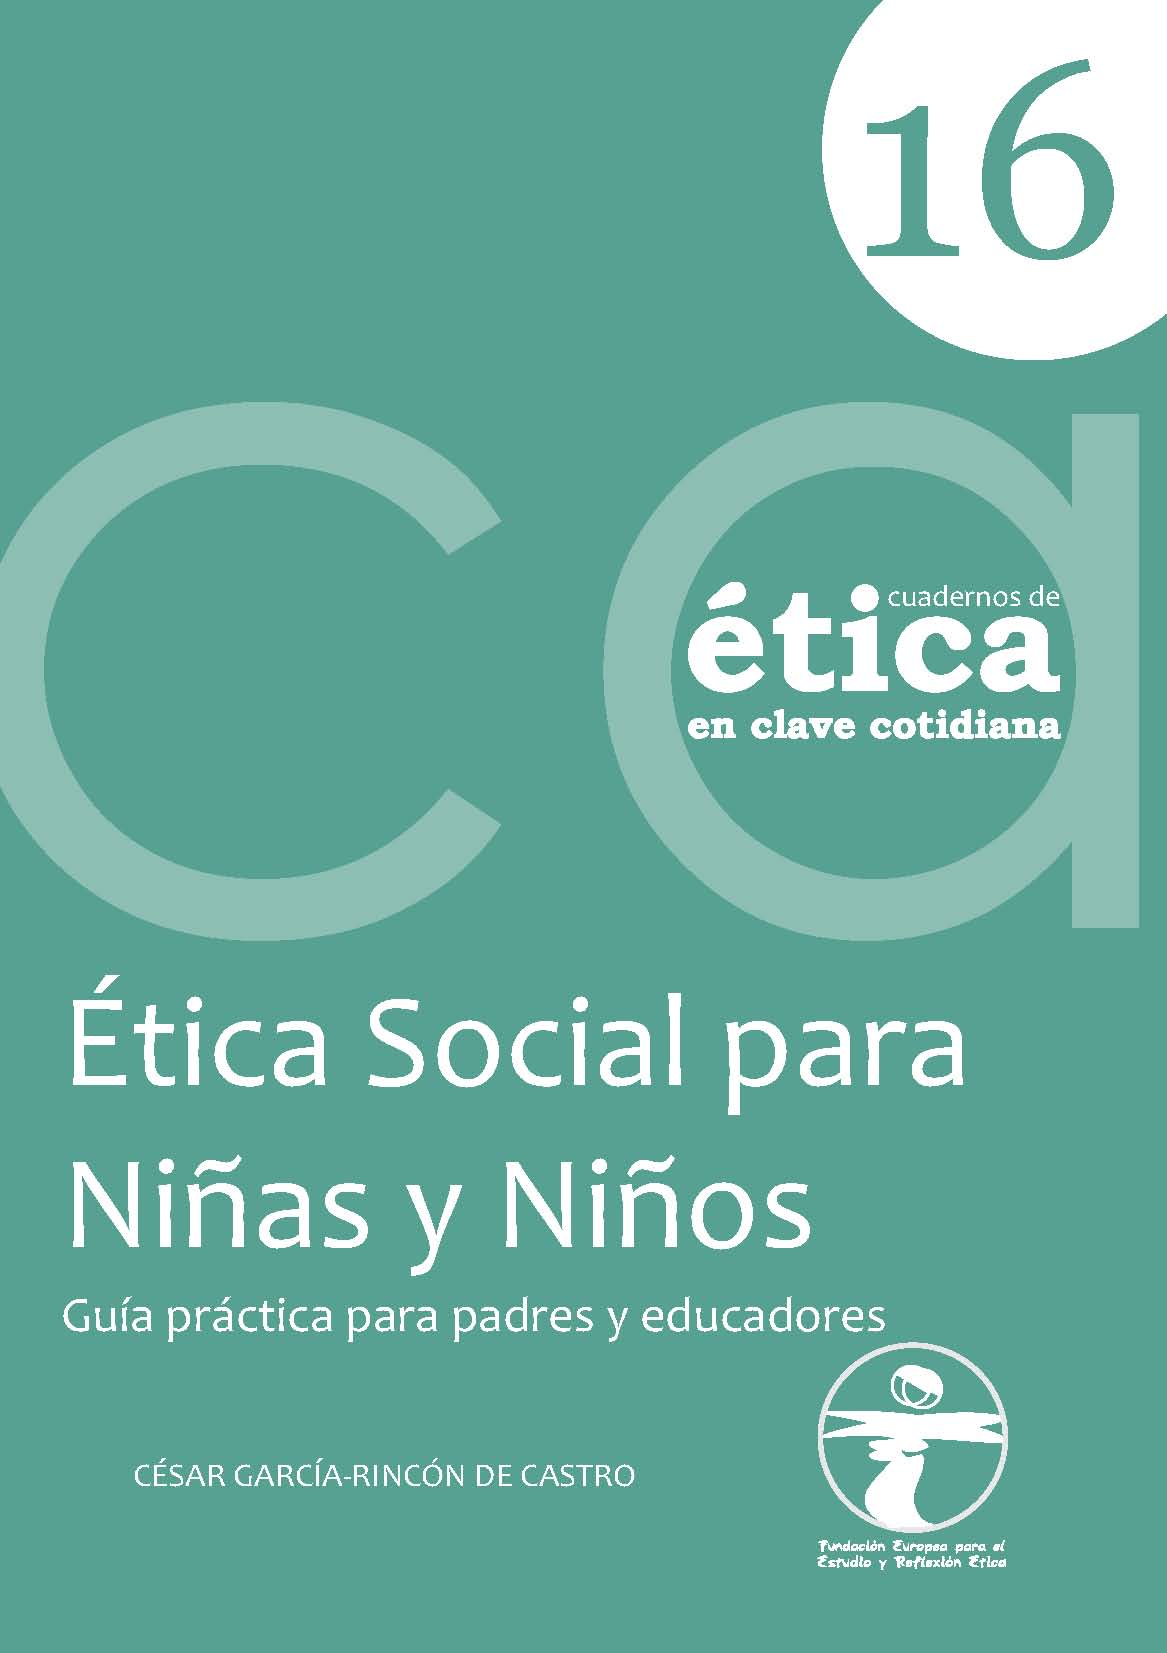 ÉTICA SOCIAL PARA NIÑAS Y NIÑOS | El Blog de Enrique Lluch Frechina